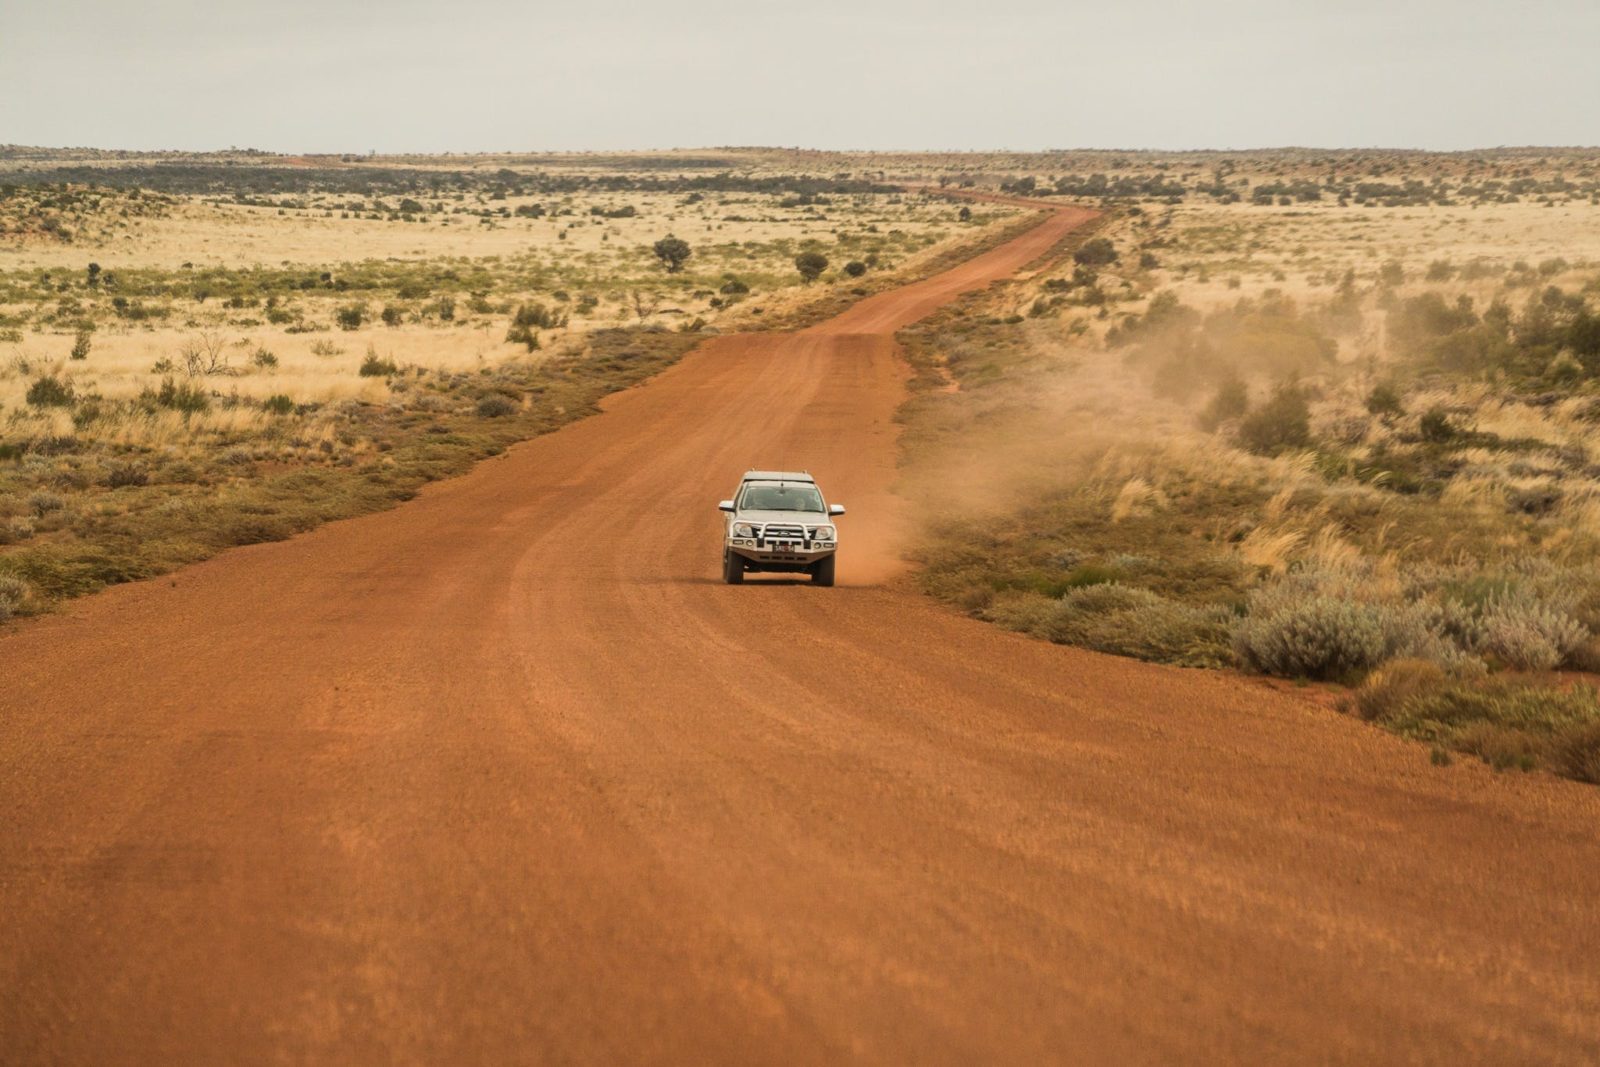 The Outback Way Australias Longest Shortcut Information Centre